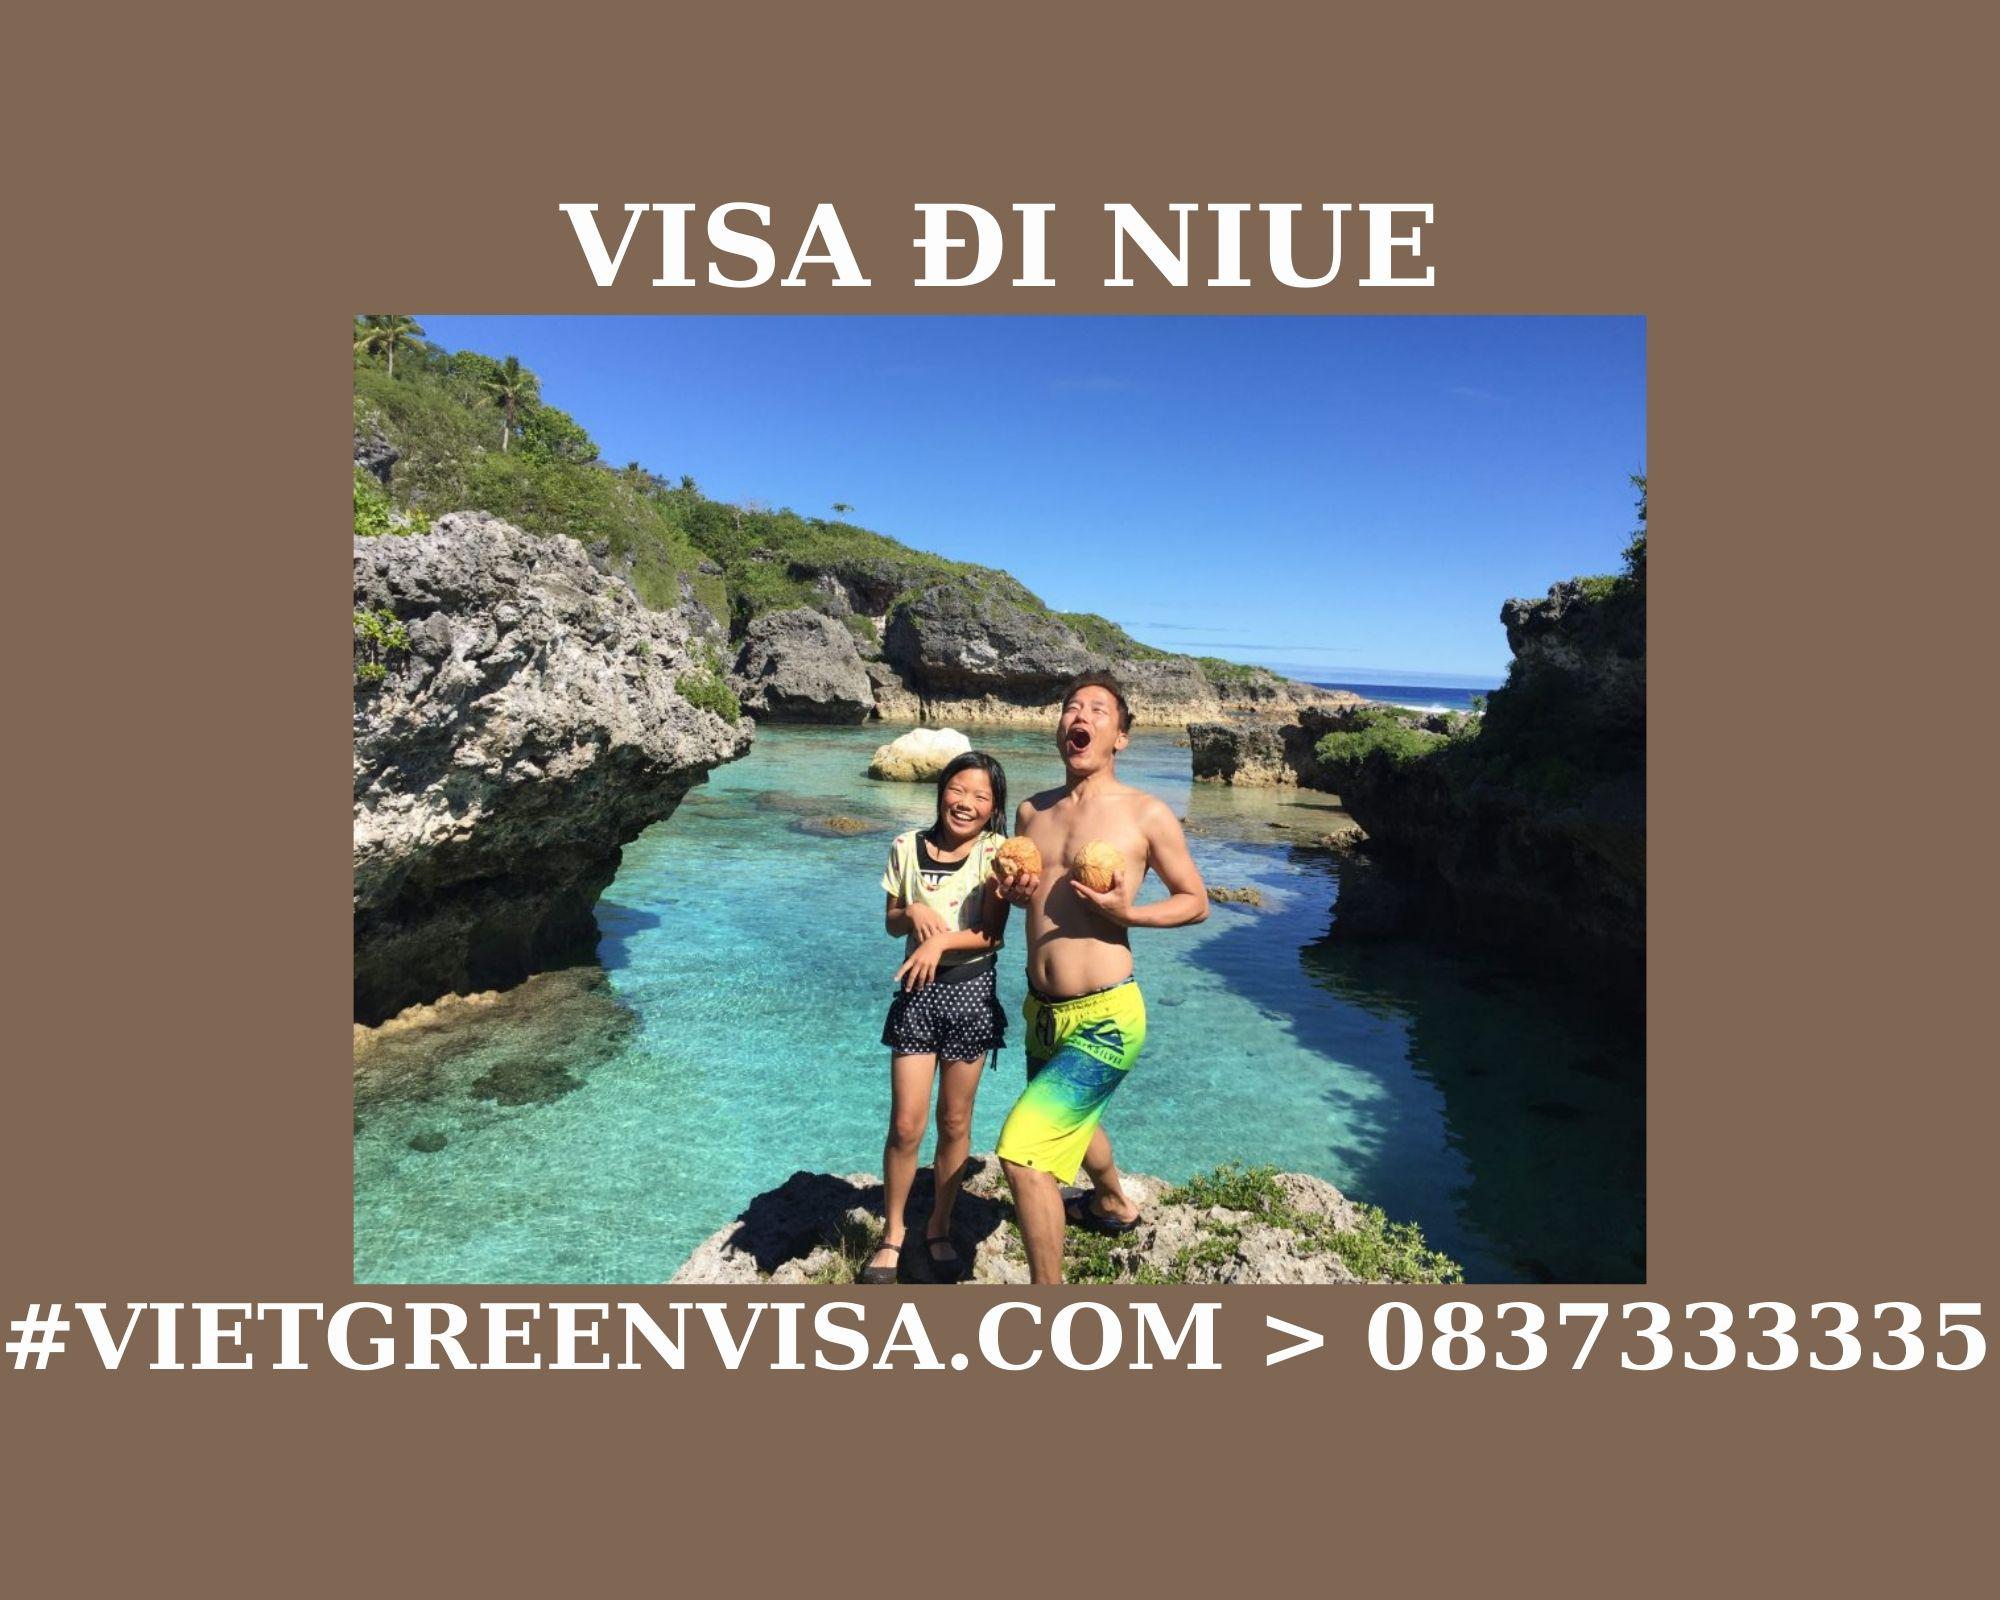 Dịch vụ xin Visa sang Niue tổ chức đám cưới, kết hôn